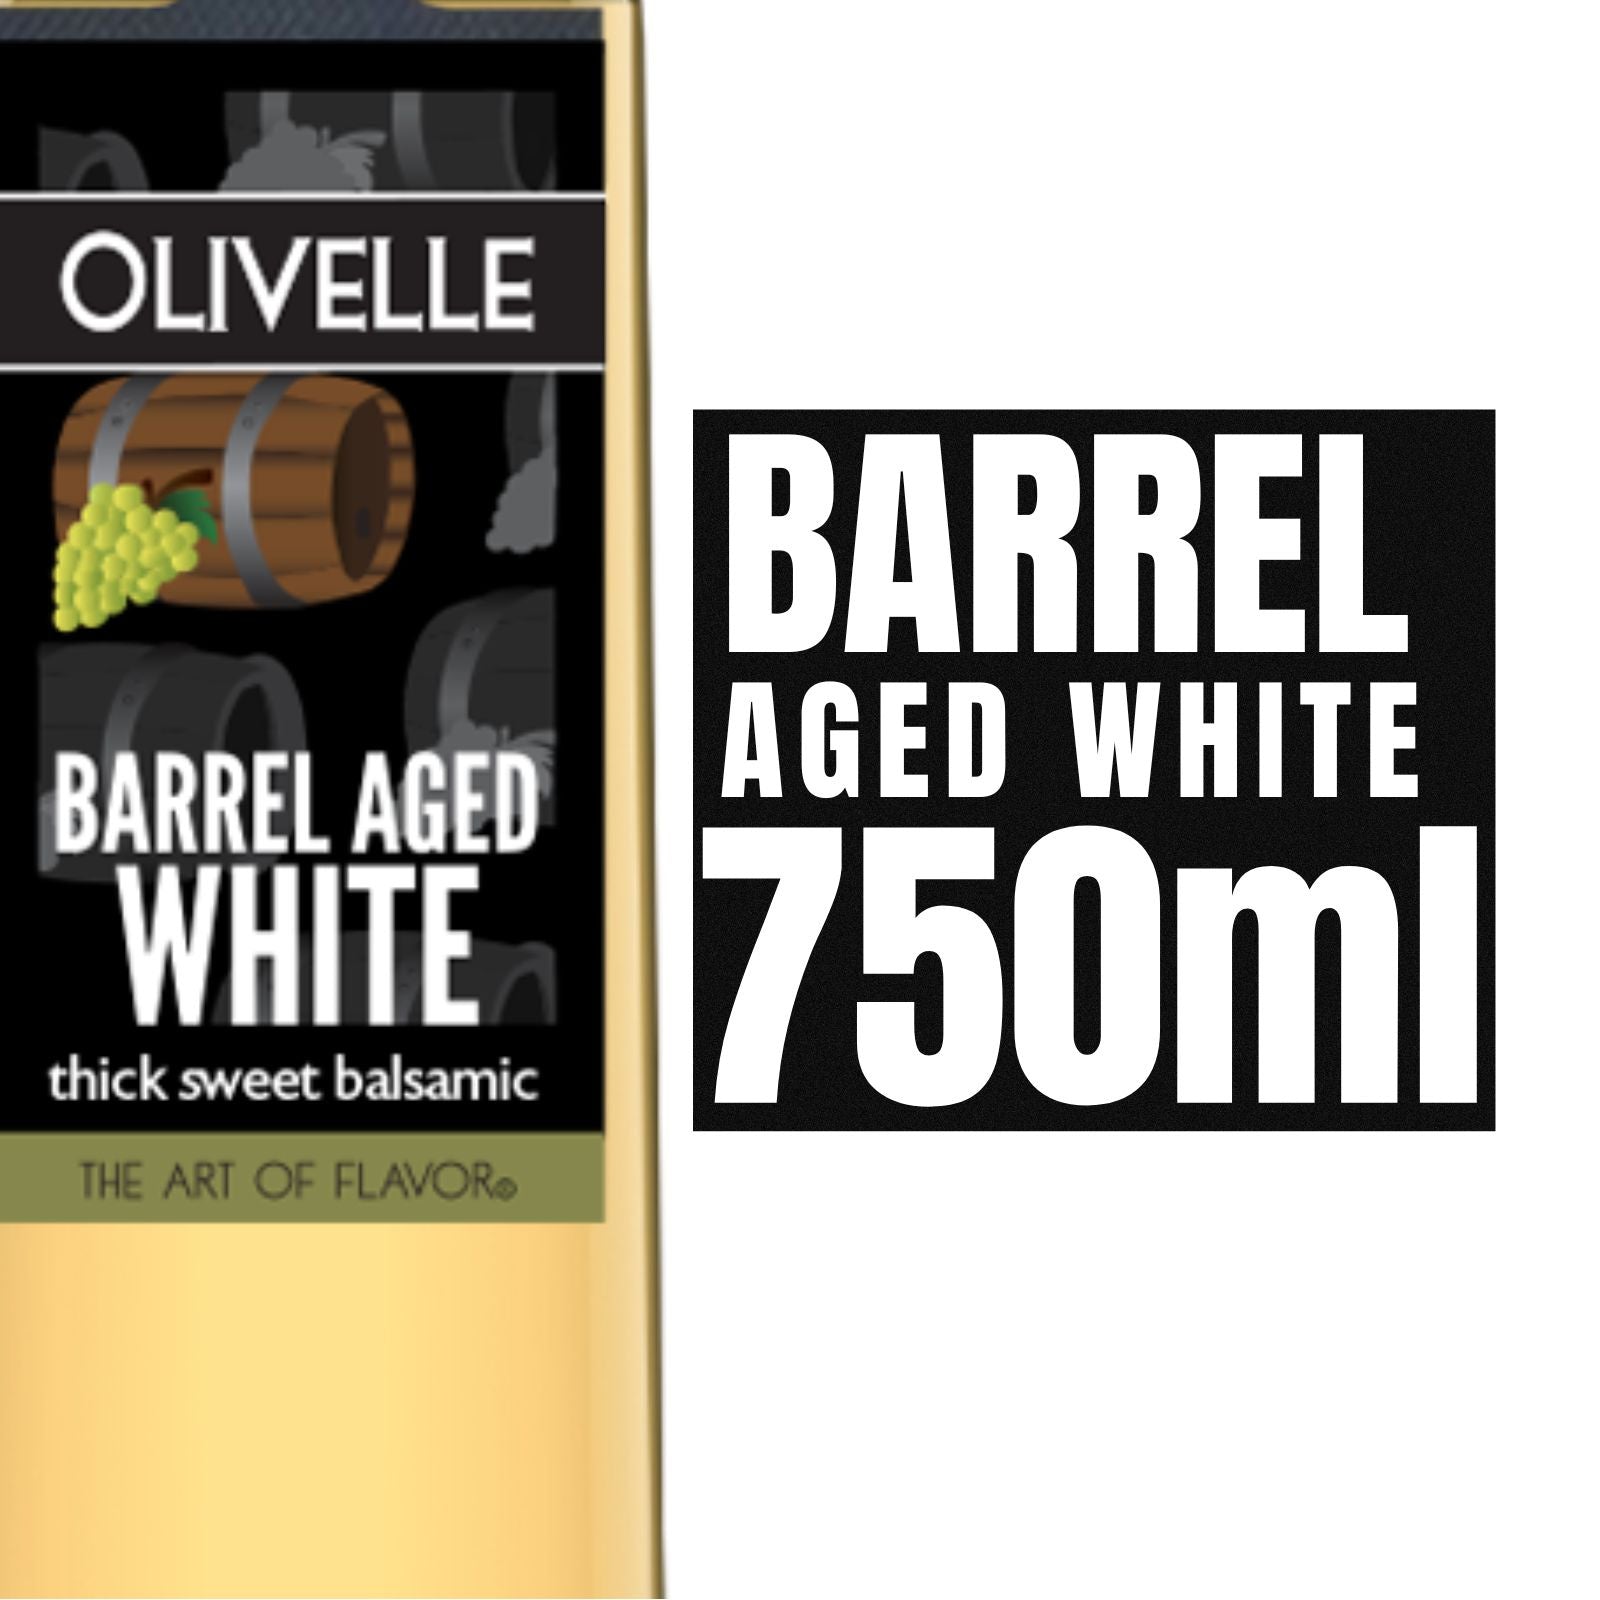 Olivelle Barrel Aged White - 750ML 10626 Olivelle Oil and Vinegar CDA Gourmet 750ml Balsamic 2